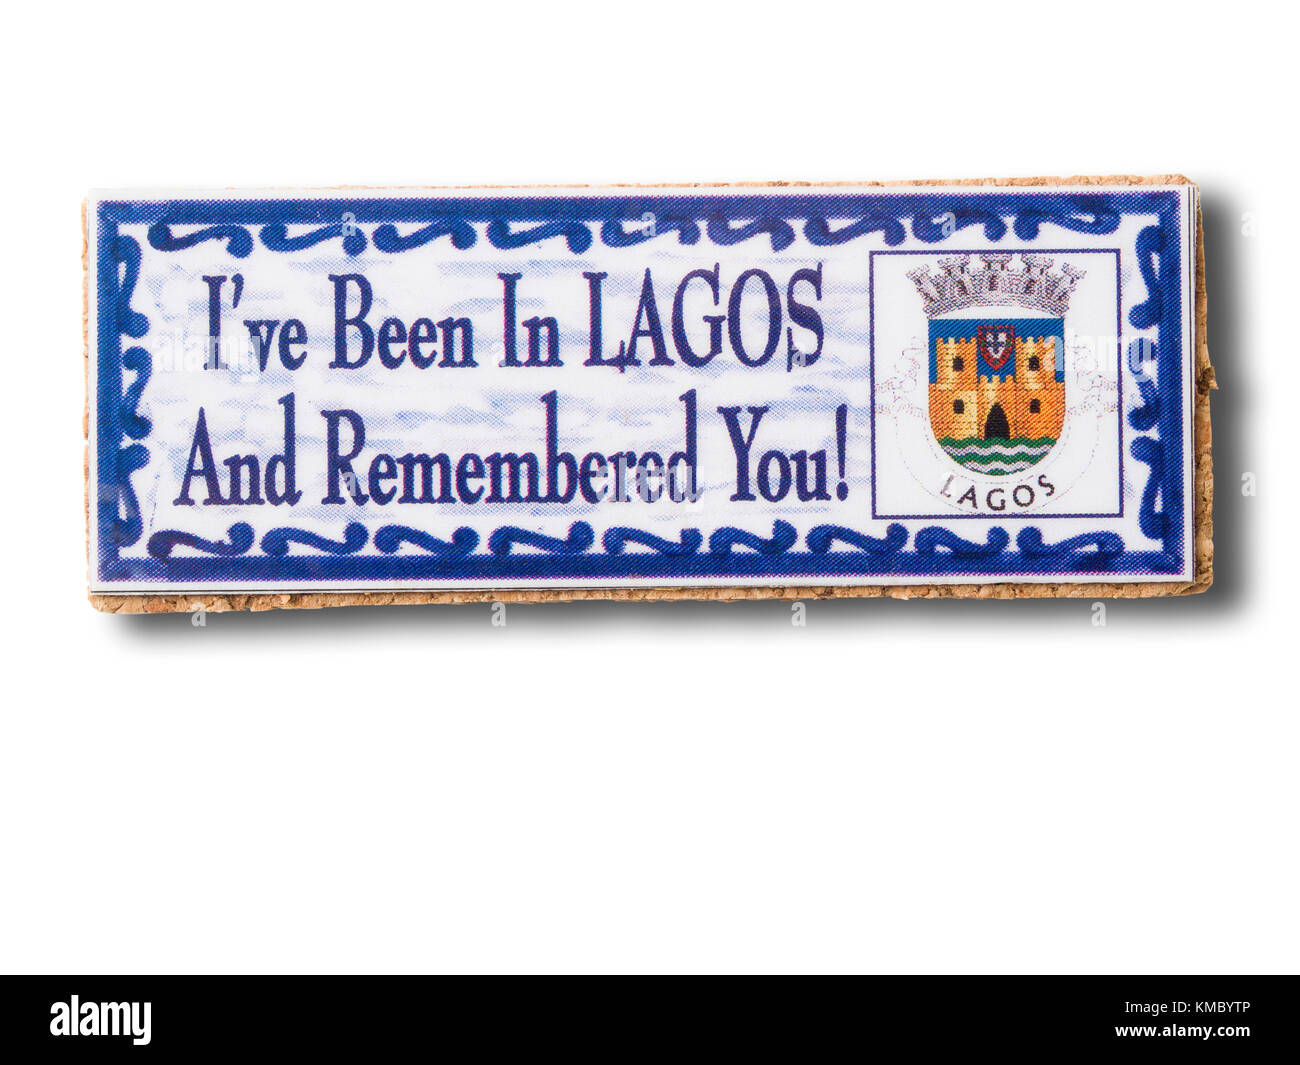 Lagos (Portogallo) souvenir magnete da frigorifero isolati su sfondo bianco Foto Stock